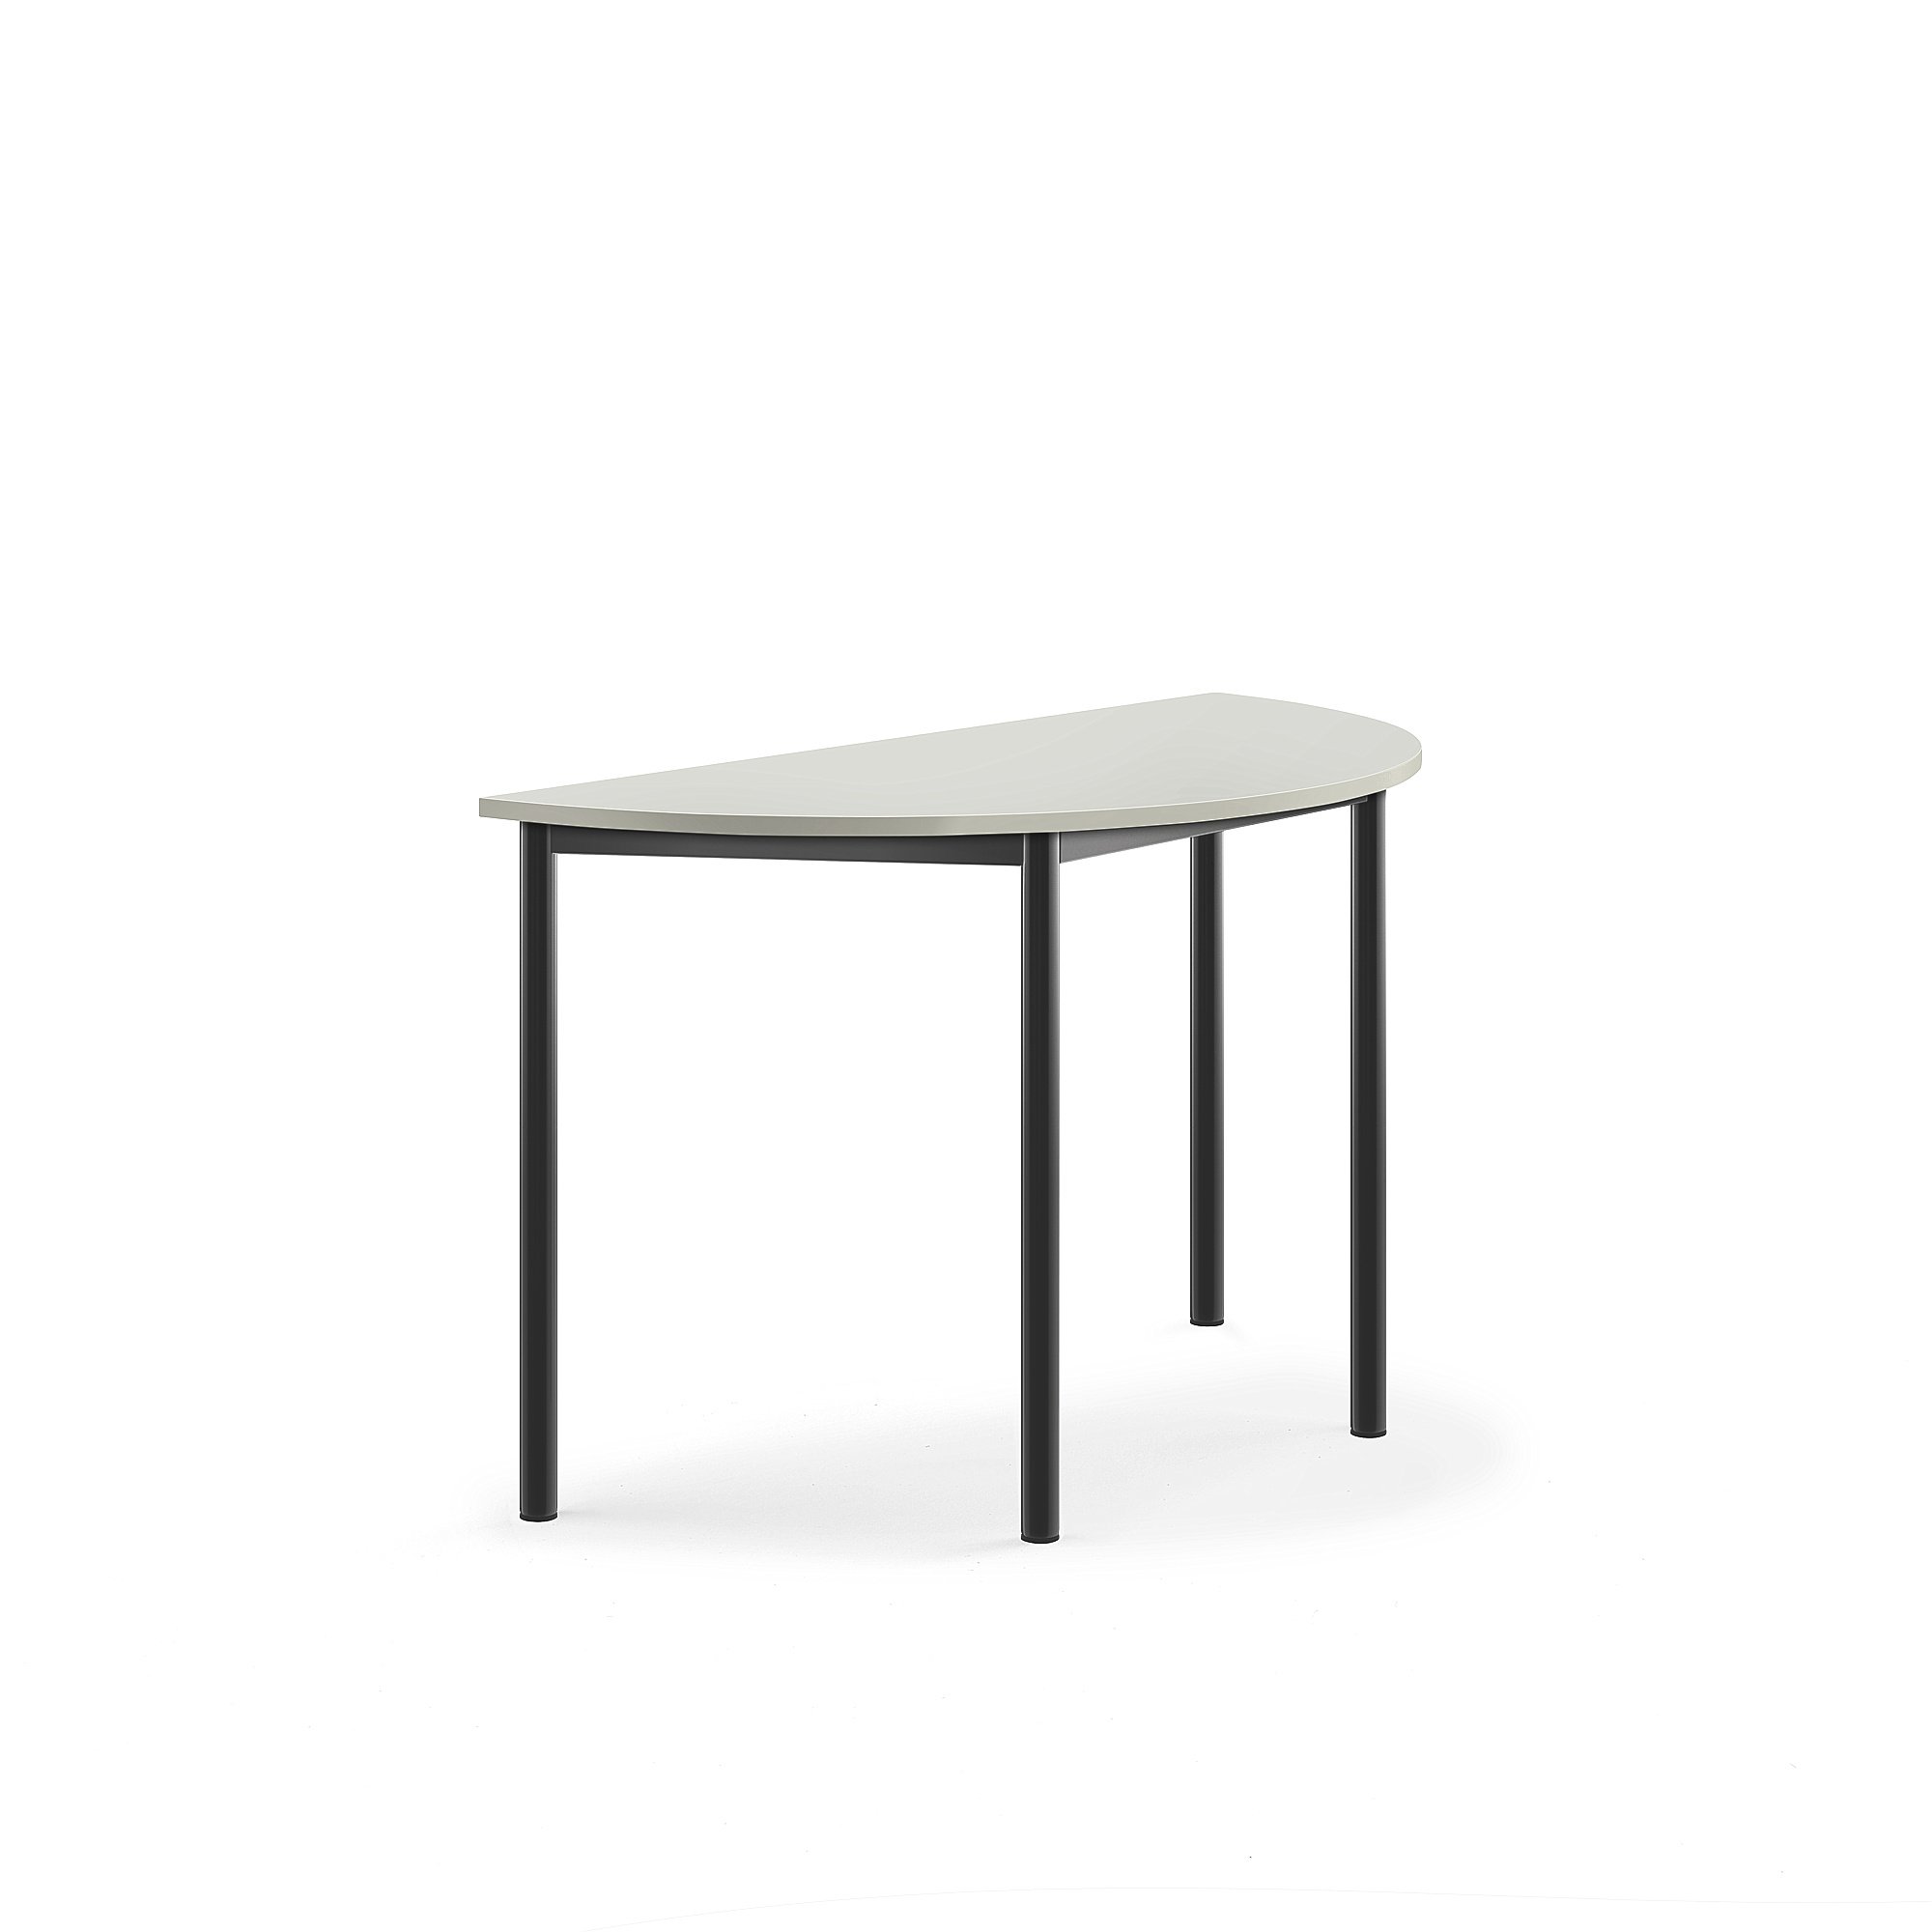 Stůl SONITUS, půlkruh, 1200x600x720 mm, antracitově šedé nohy, HPL deska tlumící hluk, šedá